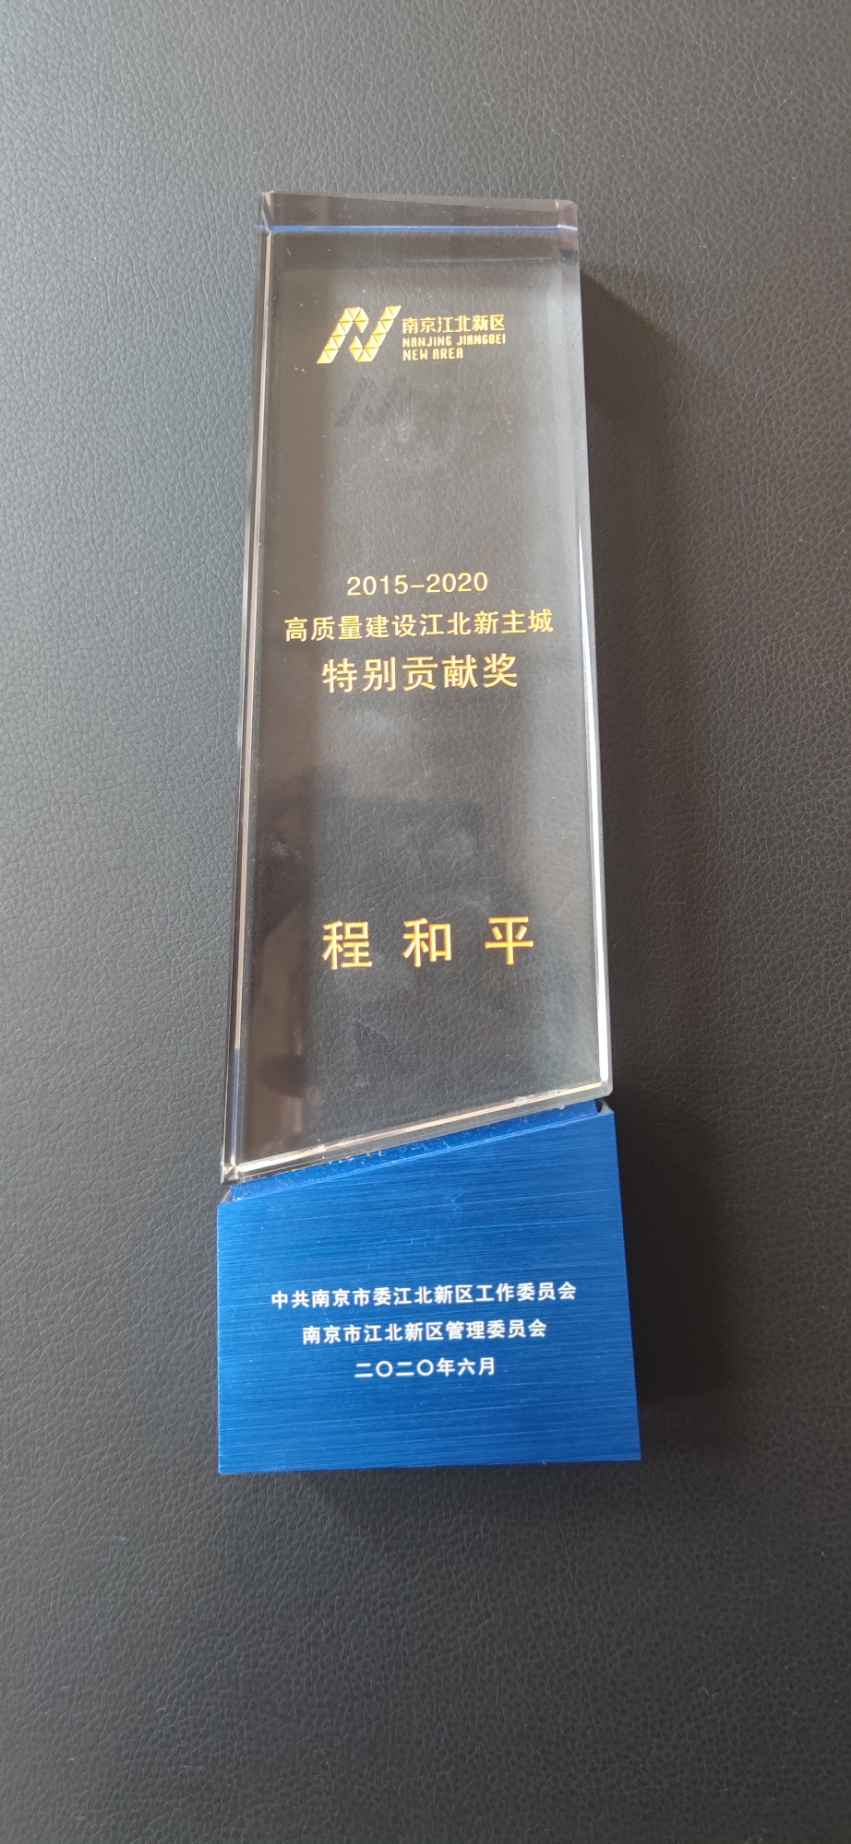 2015-2020高质量建设江北新区特别贡献奖